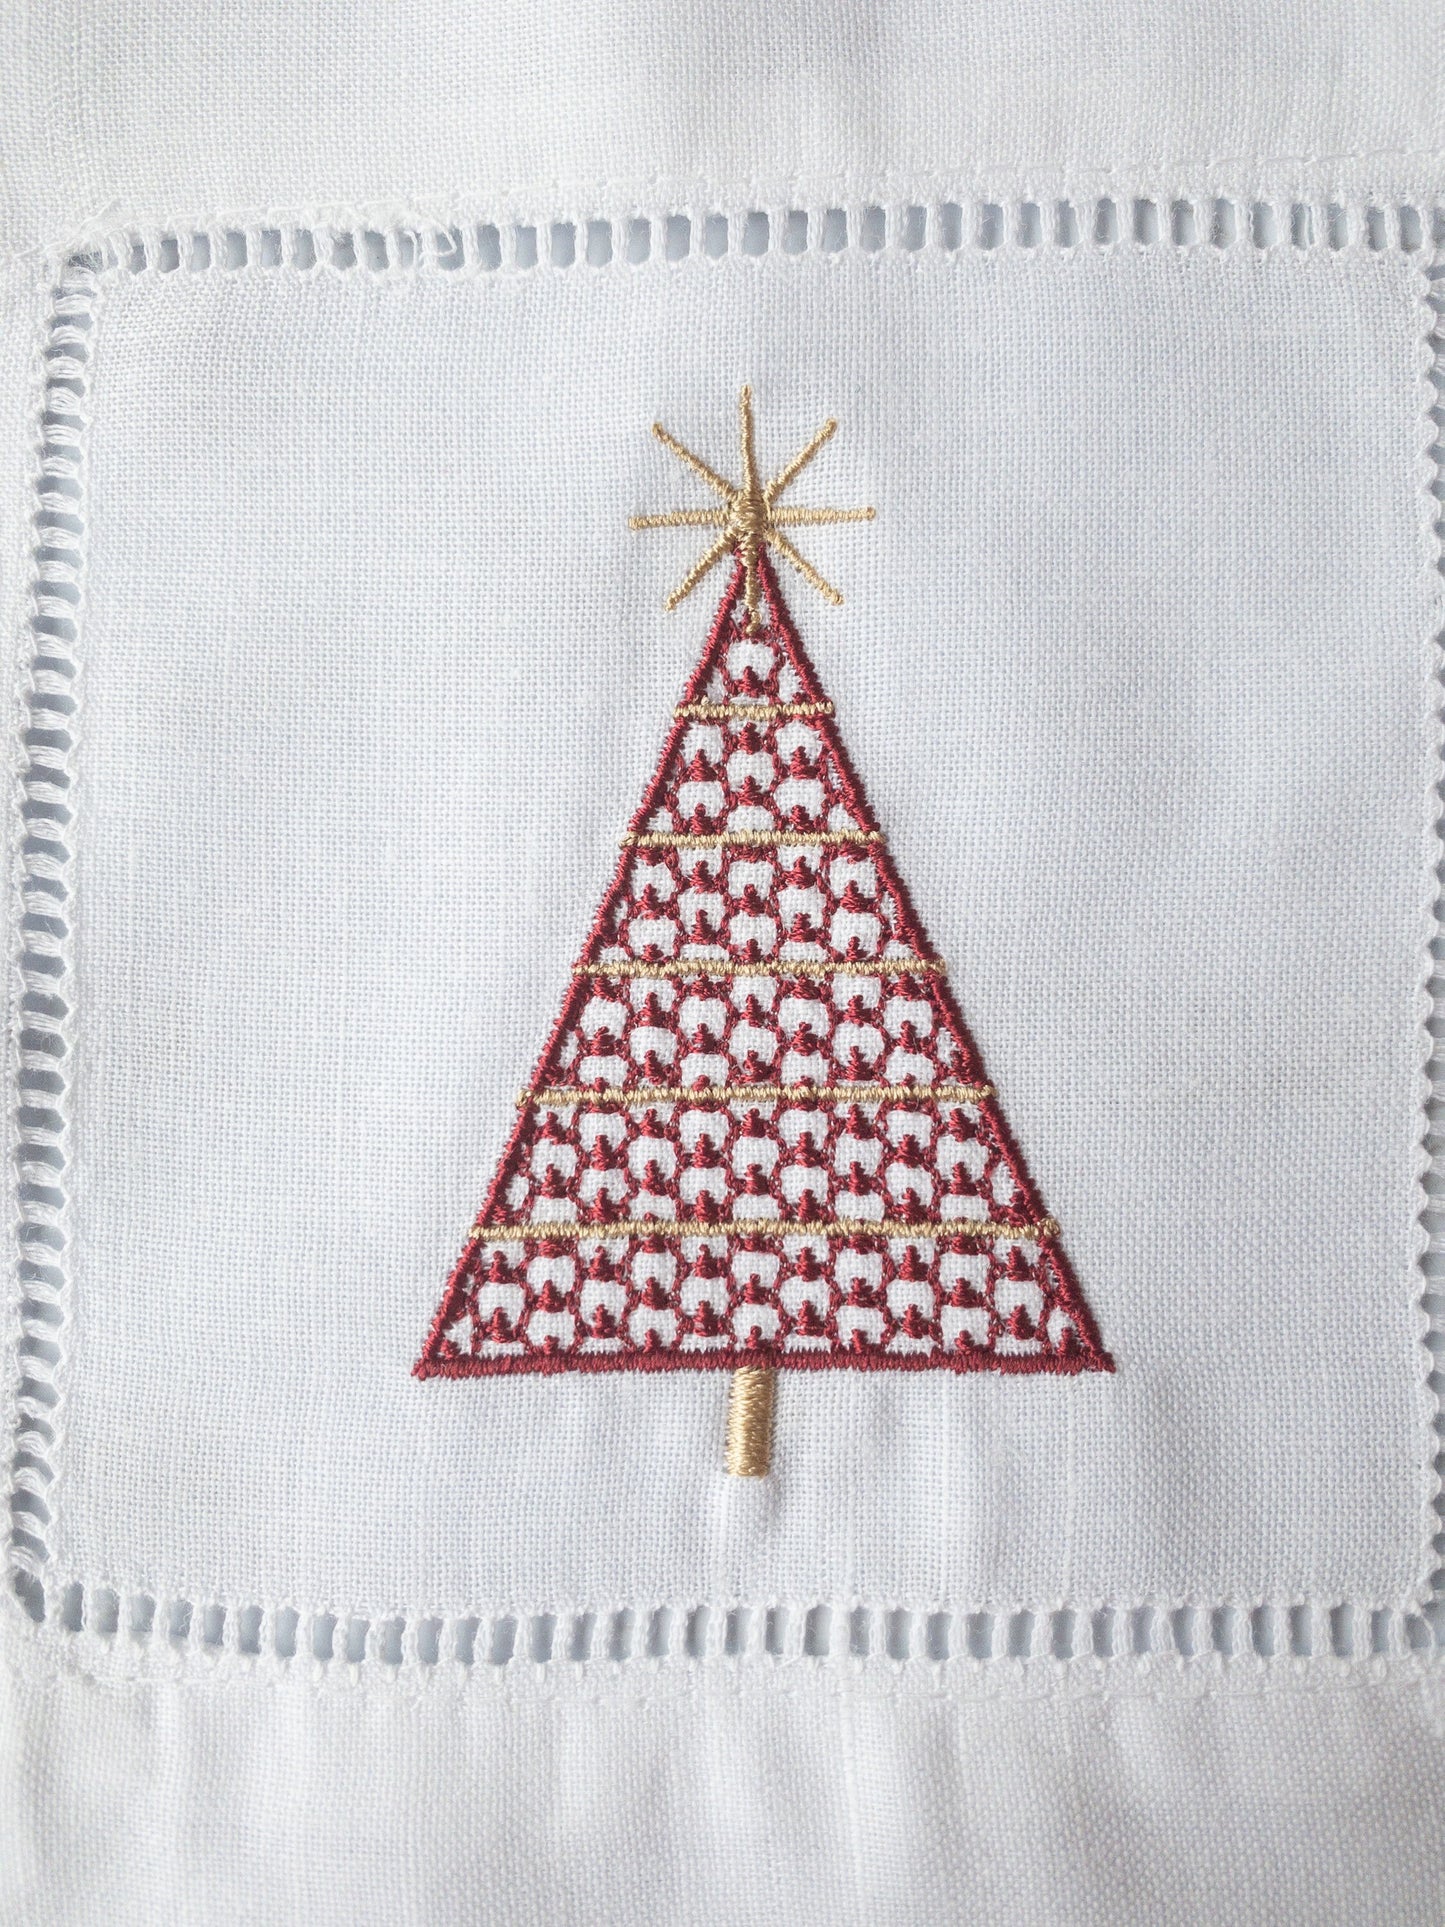 Embroidered Christmas Tree Cocktail Napkin Set , Christmas Drink Napkins #112